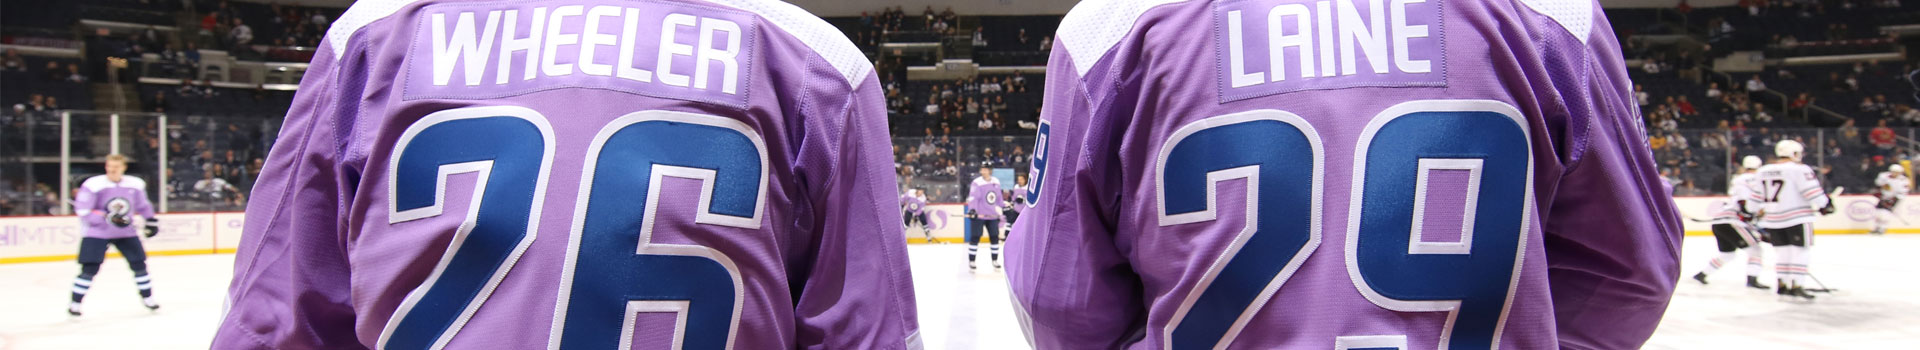 winnipeg jets purple jersey